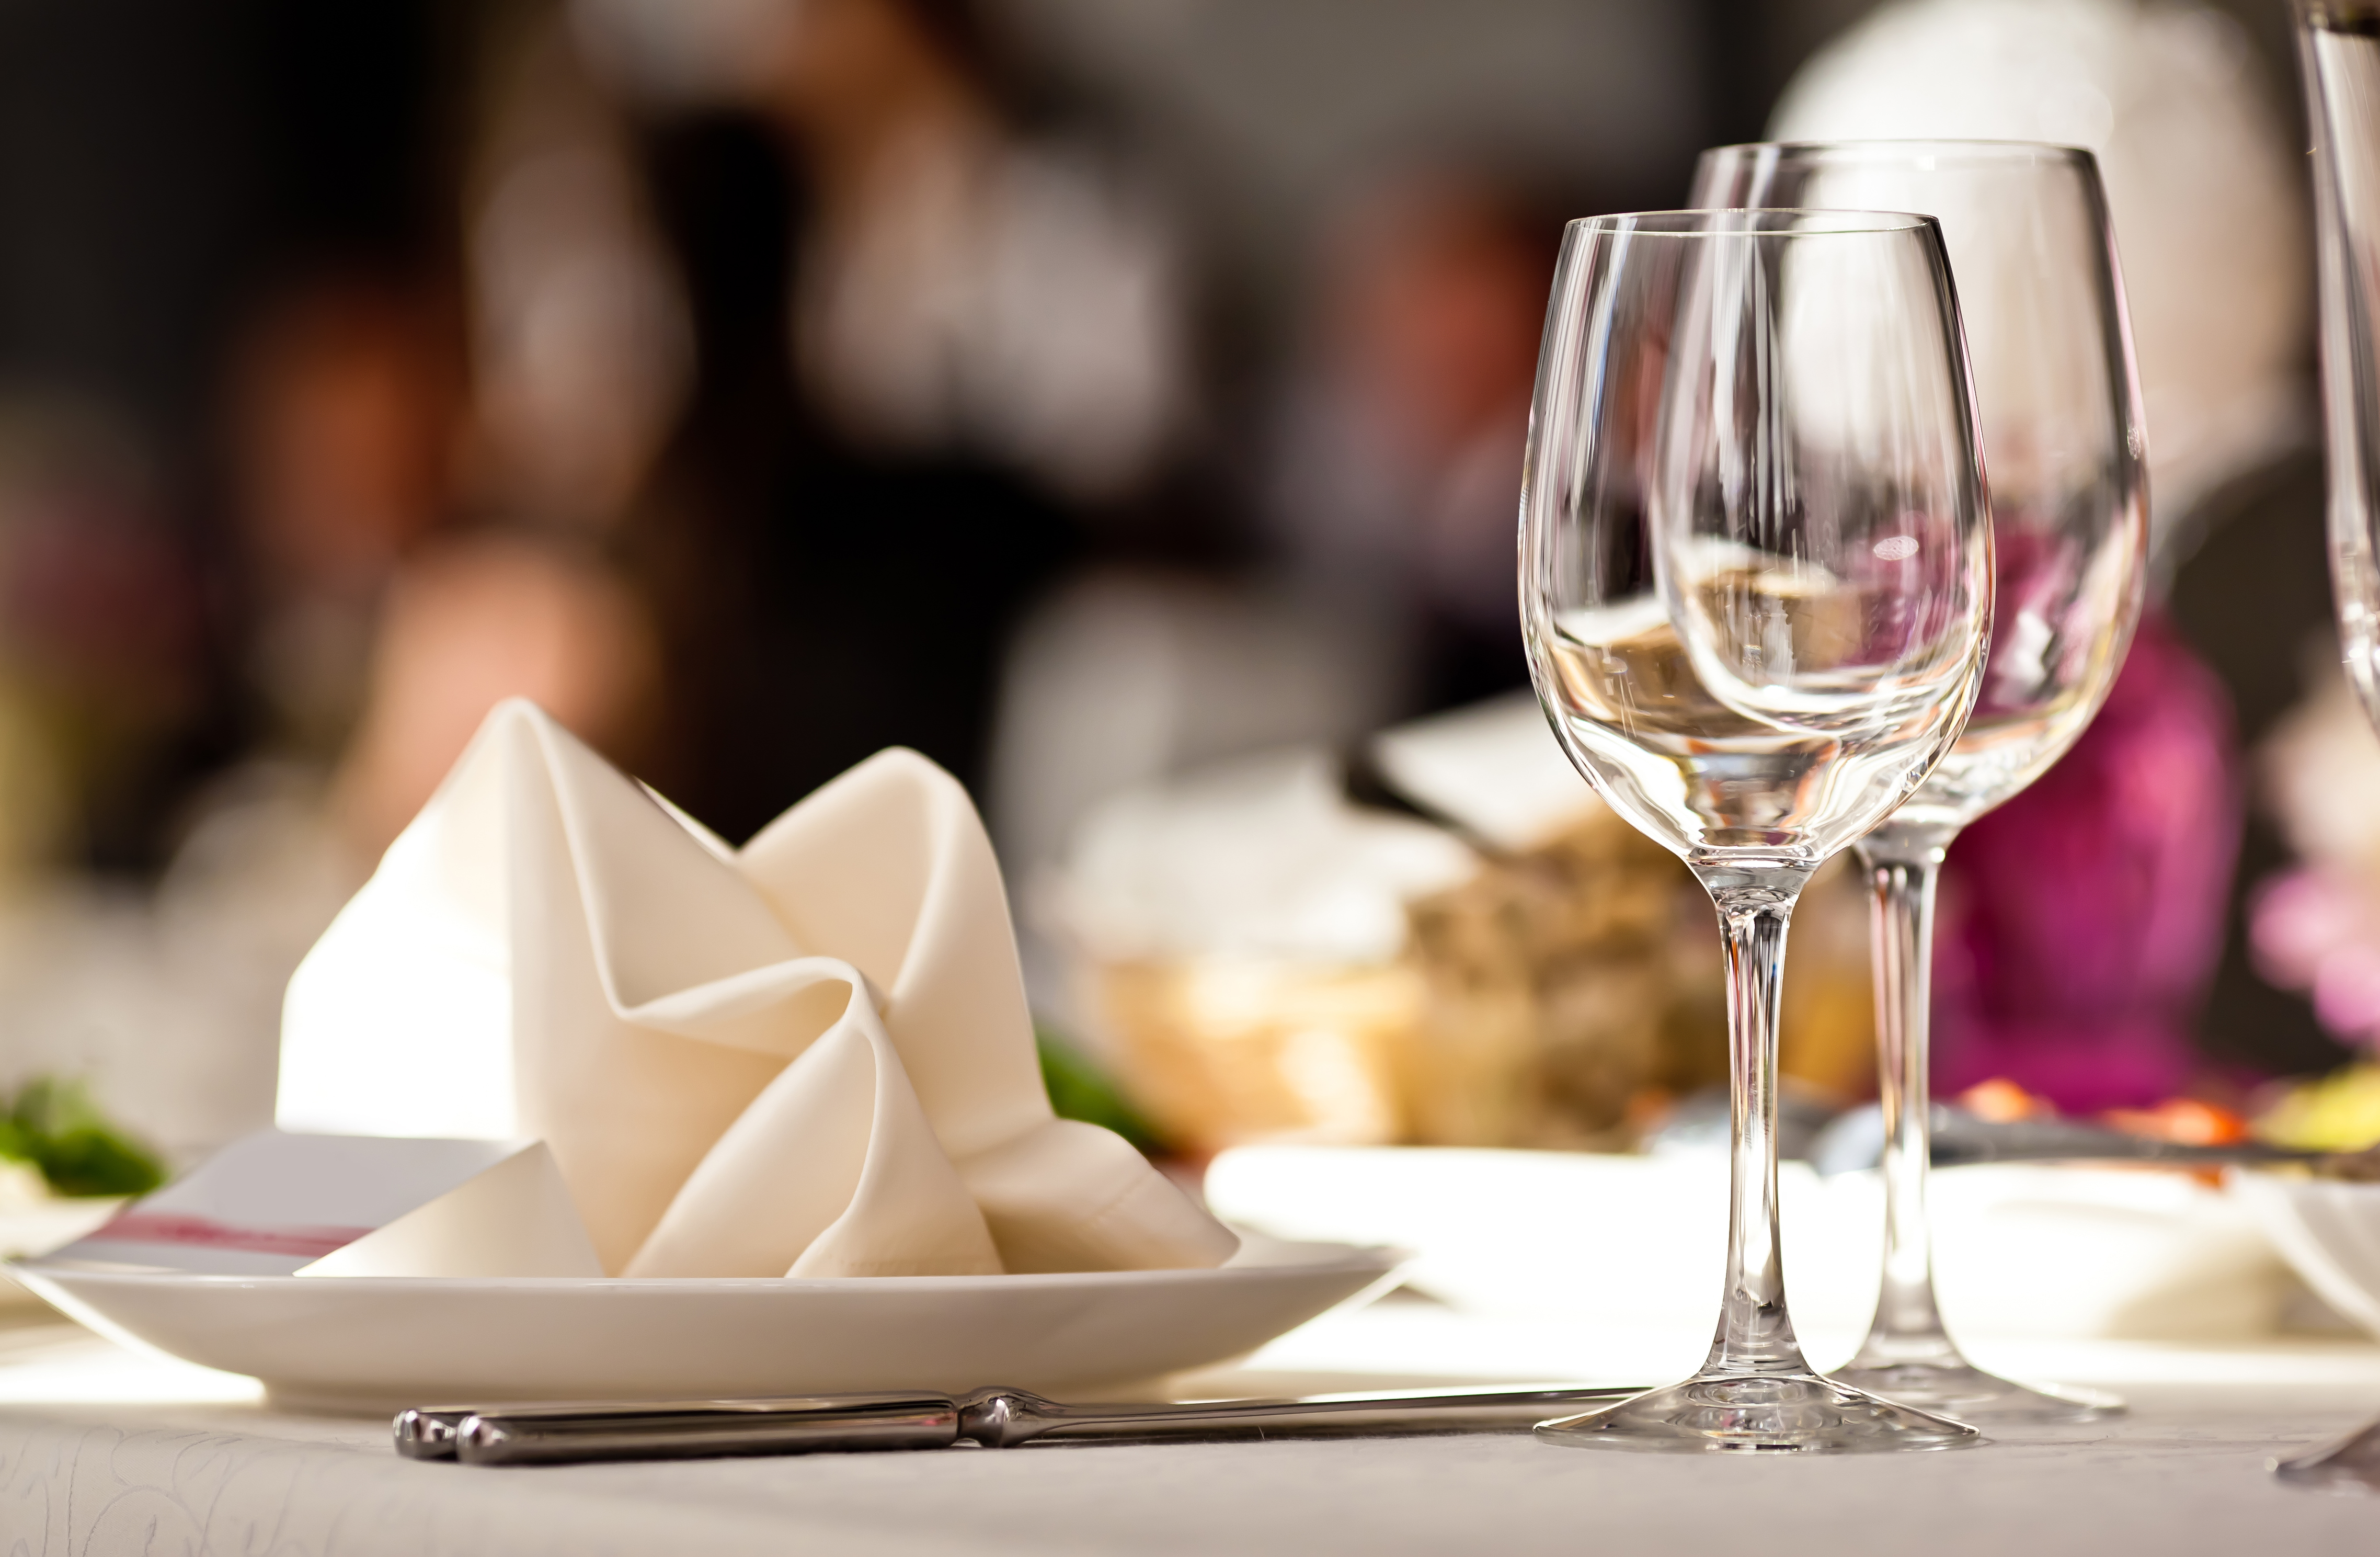 Deux verres et des serviettes posés sur une table | Source : Shutterstock